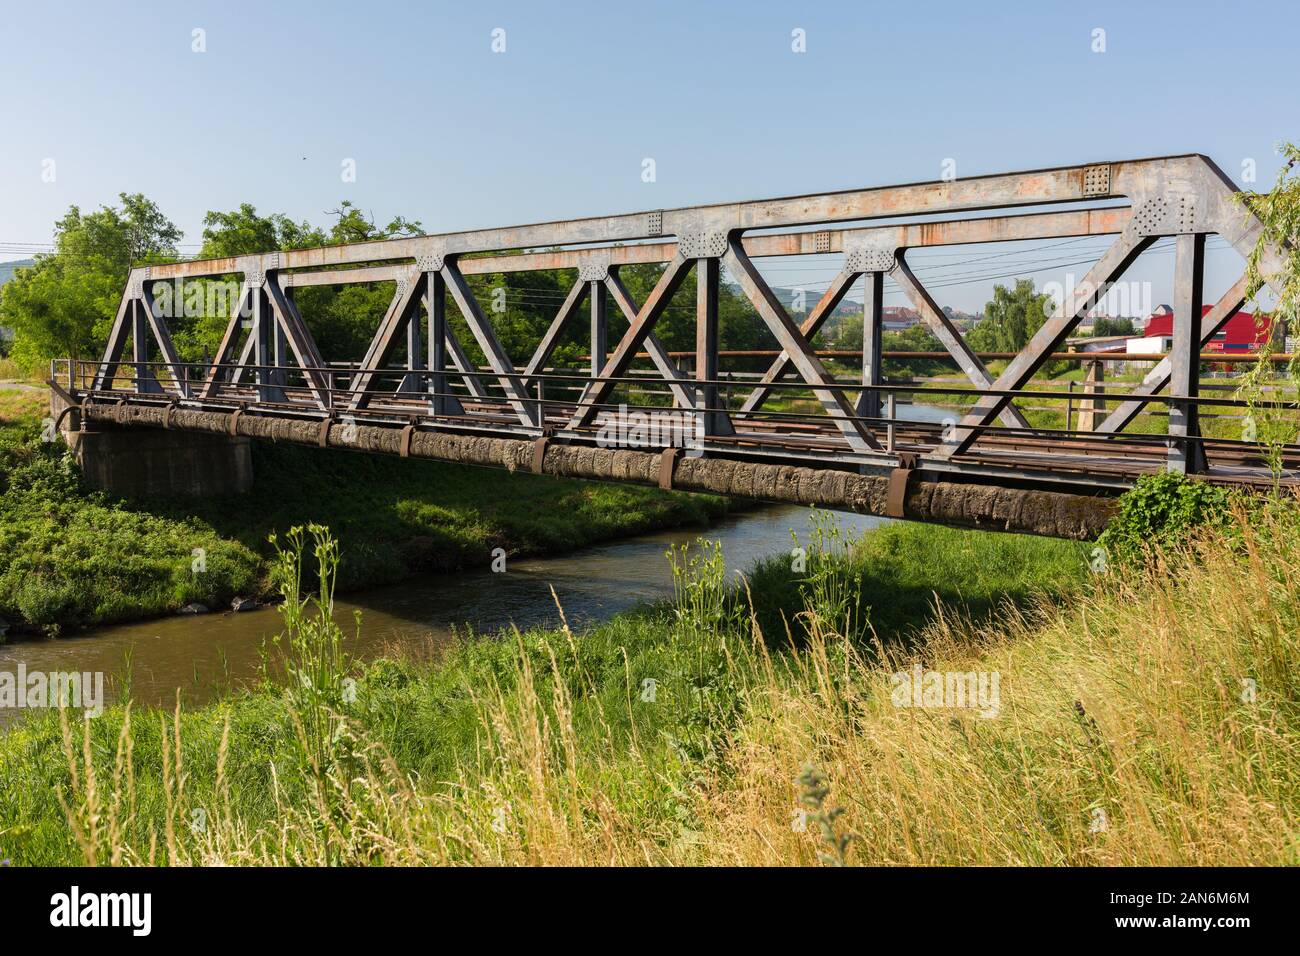 Diagonale Sicht auf eine alte Brücke mit Stahlstützen. Konzept/Metapher für Chancen, Verbindung, Kommunikation, Teamarbeit, Business, Transport Stockfoto